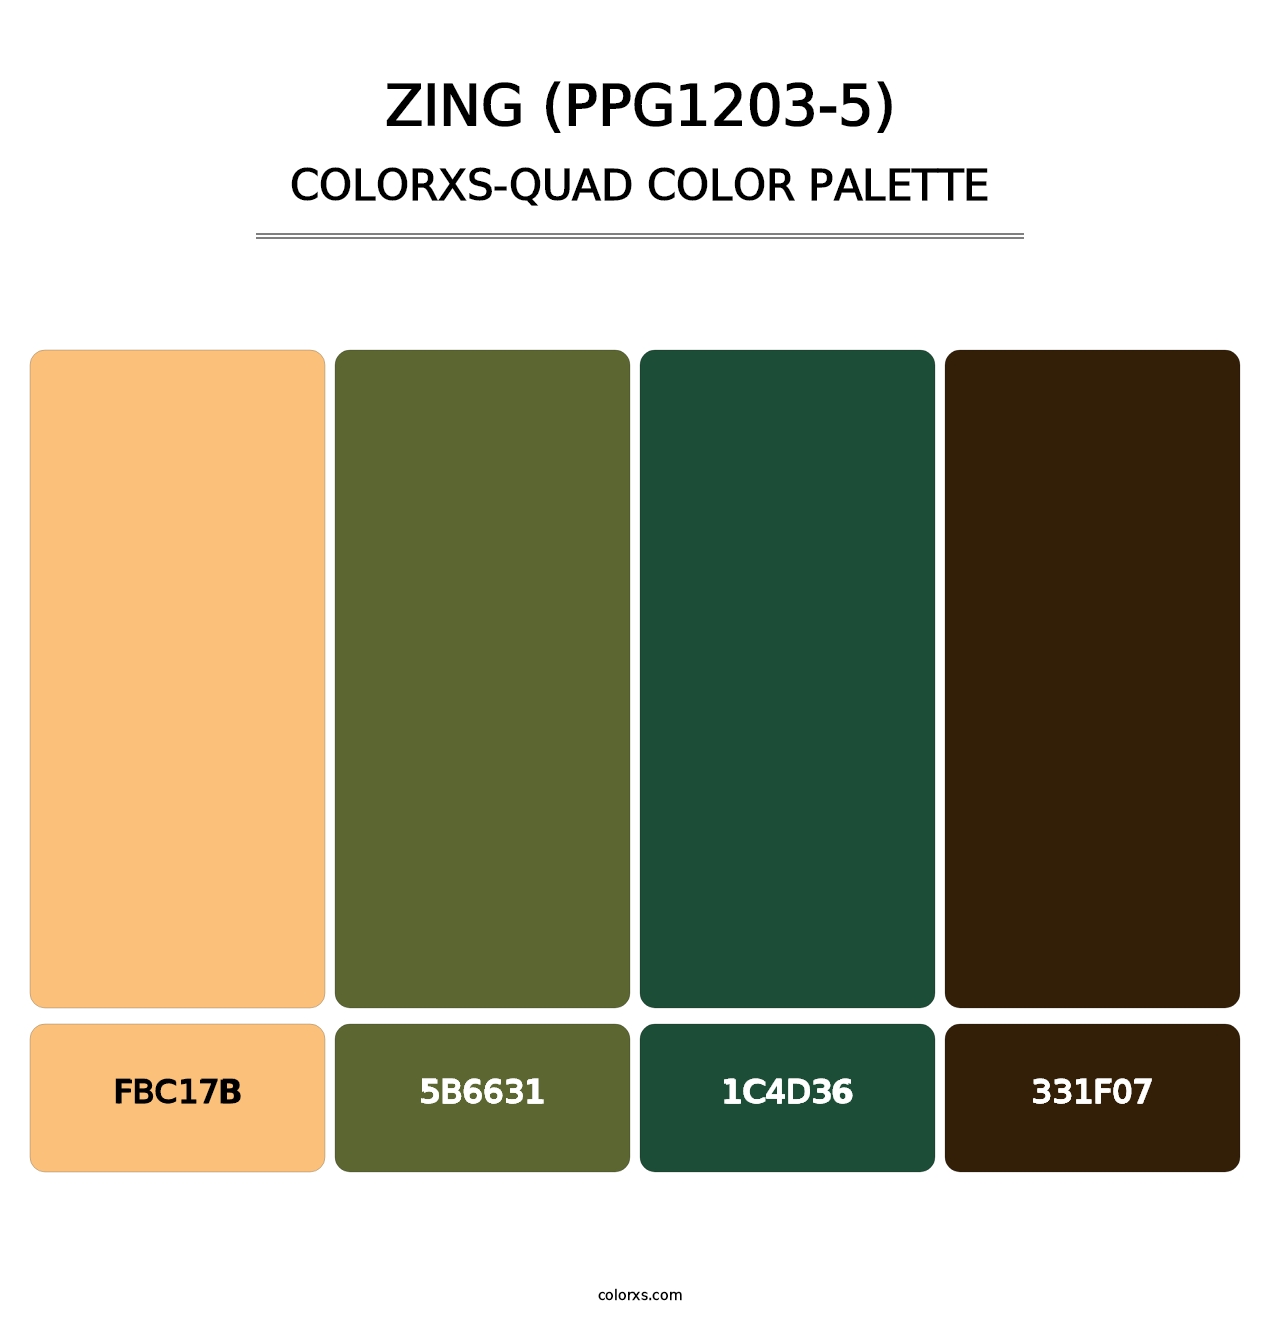 Zing (PPG1203-5) - Colorxs Quad Palette